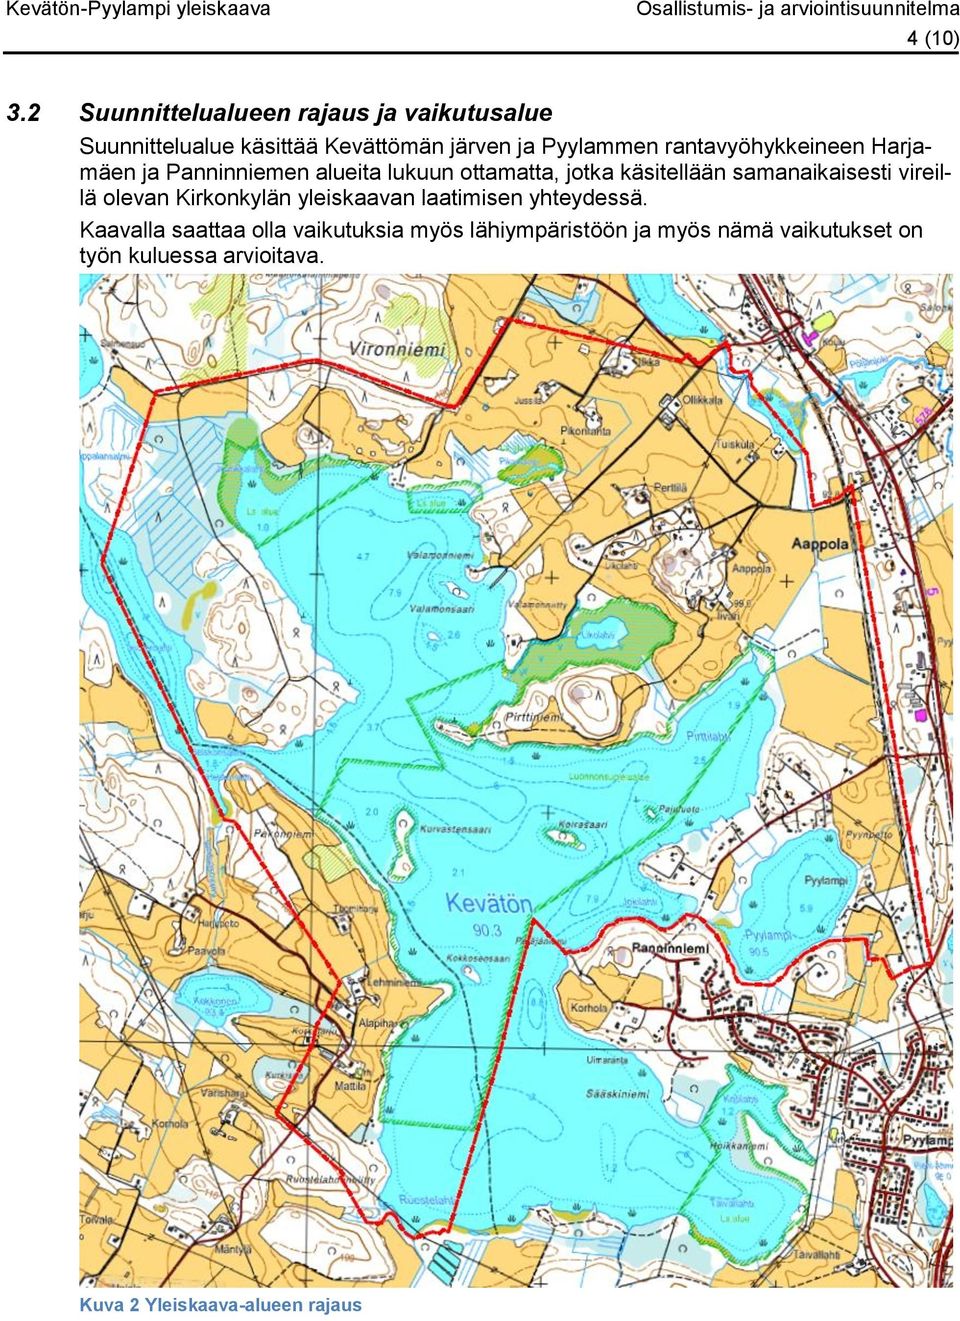 rantavyöhykkeineen Harjamäen ja Panninniemen alueita lukuun ottamatta, jotka käsitellään